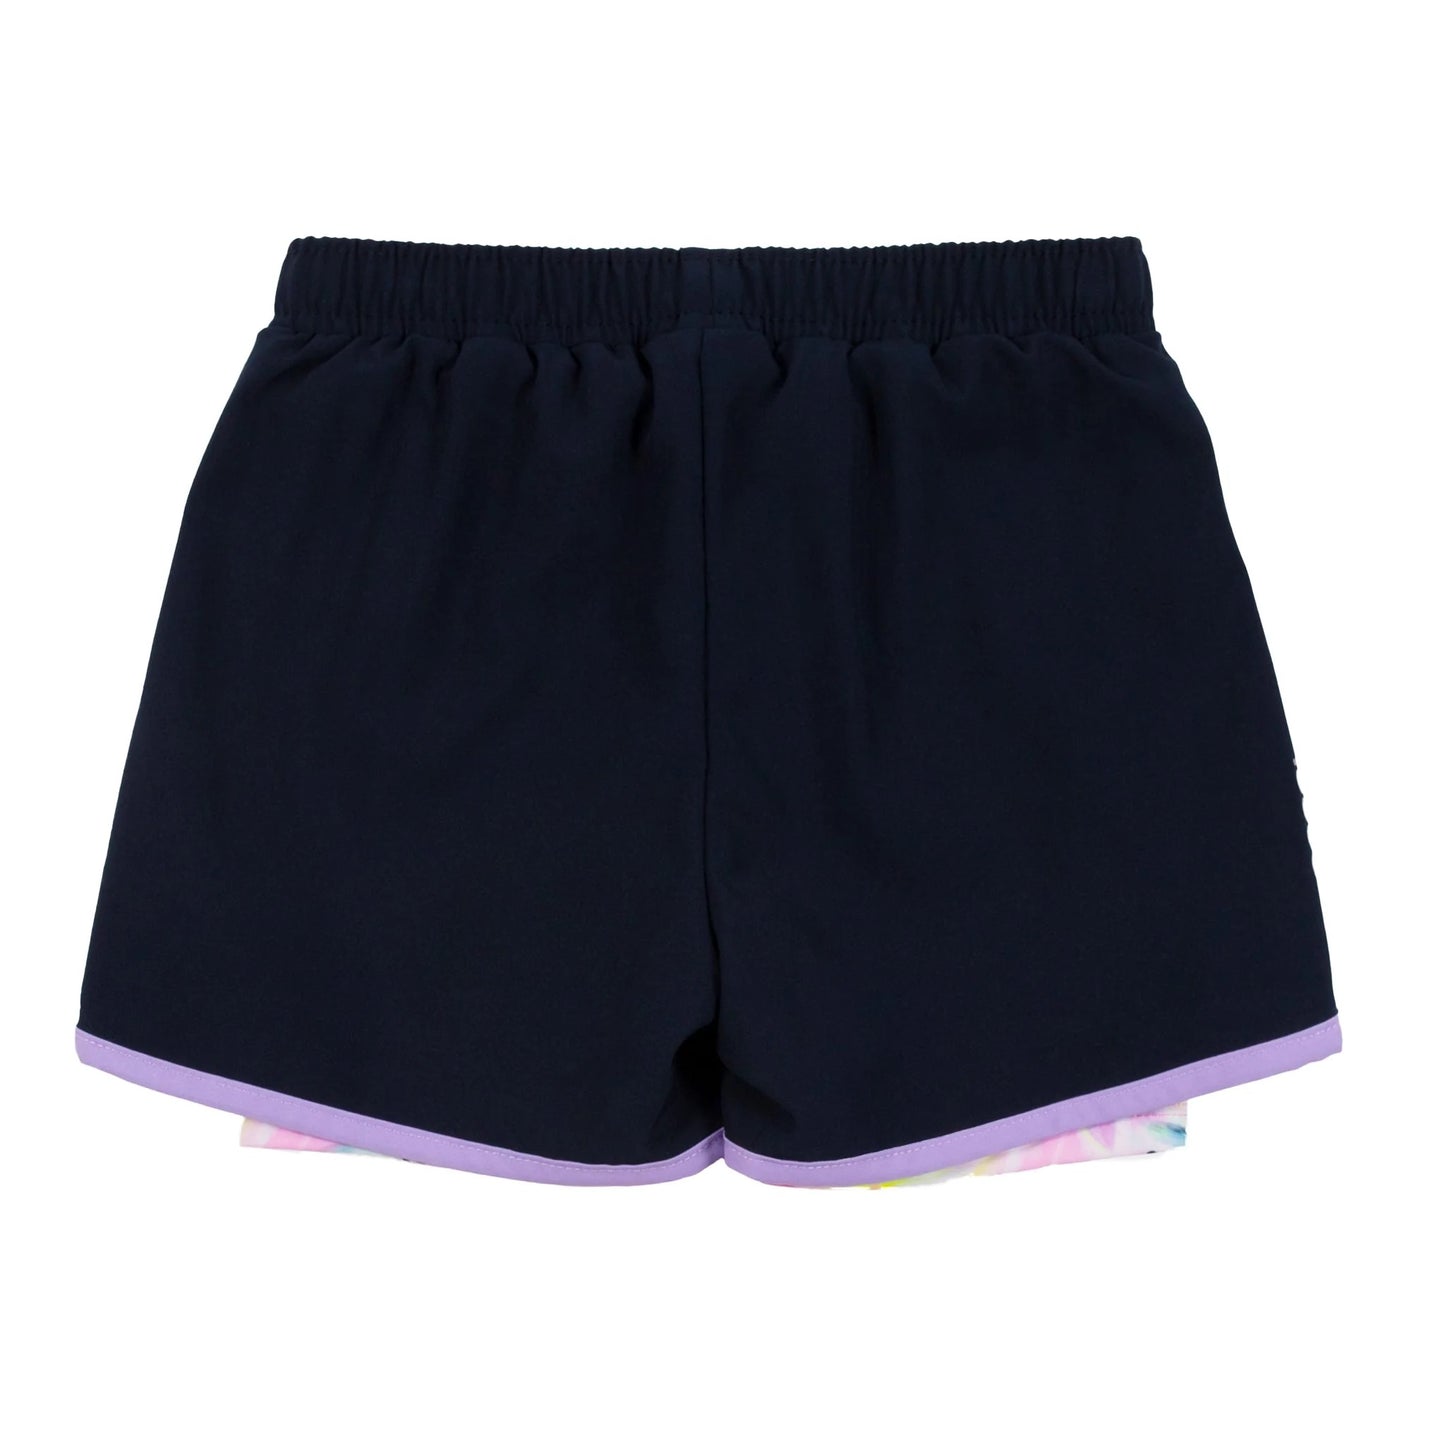 Navy/Pink Athletic Shorts Nano (4)